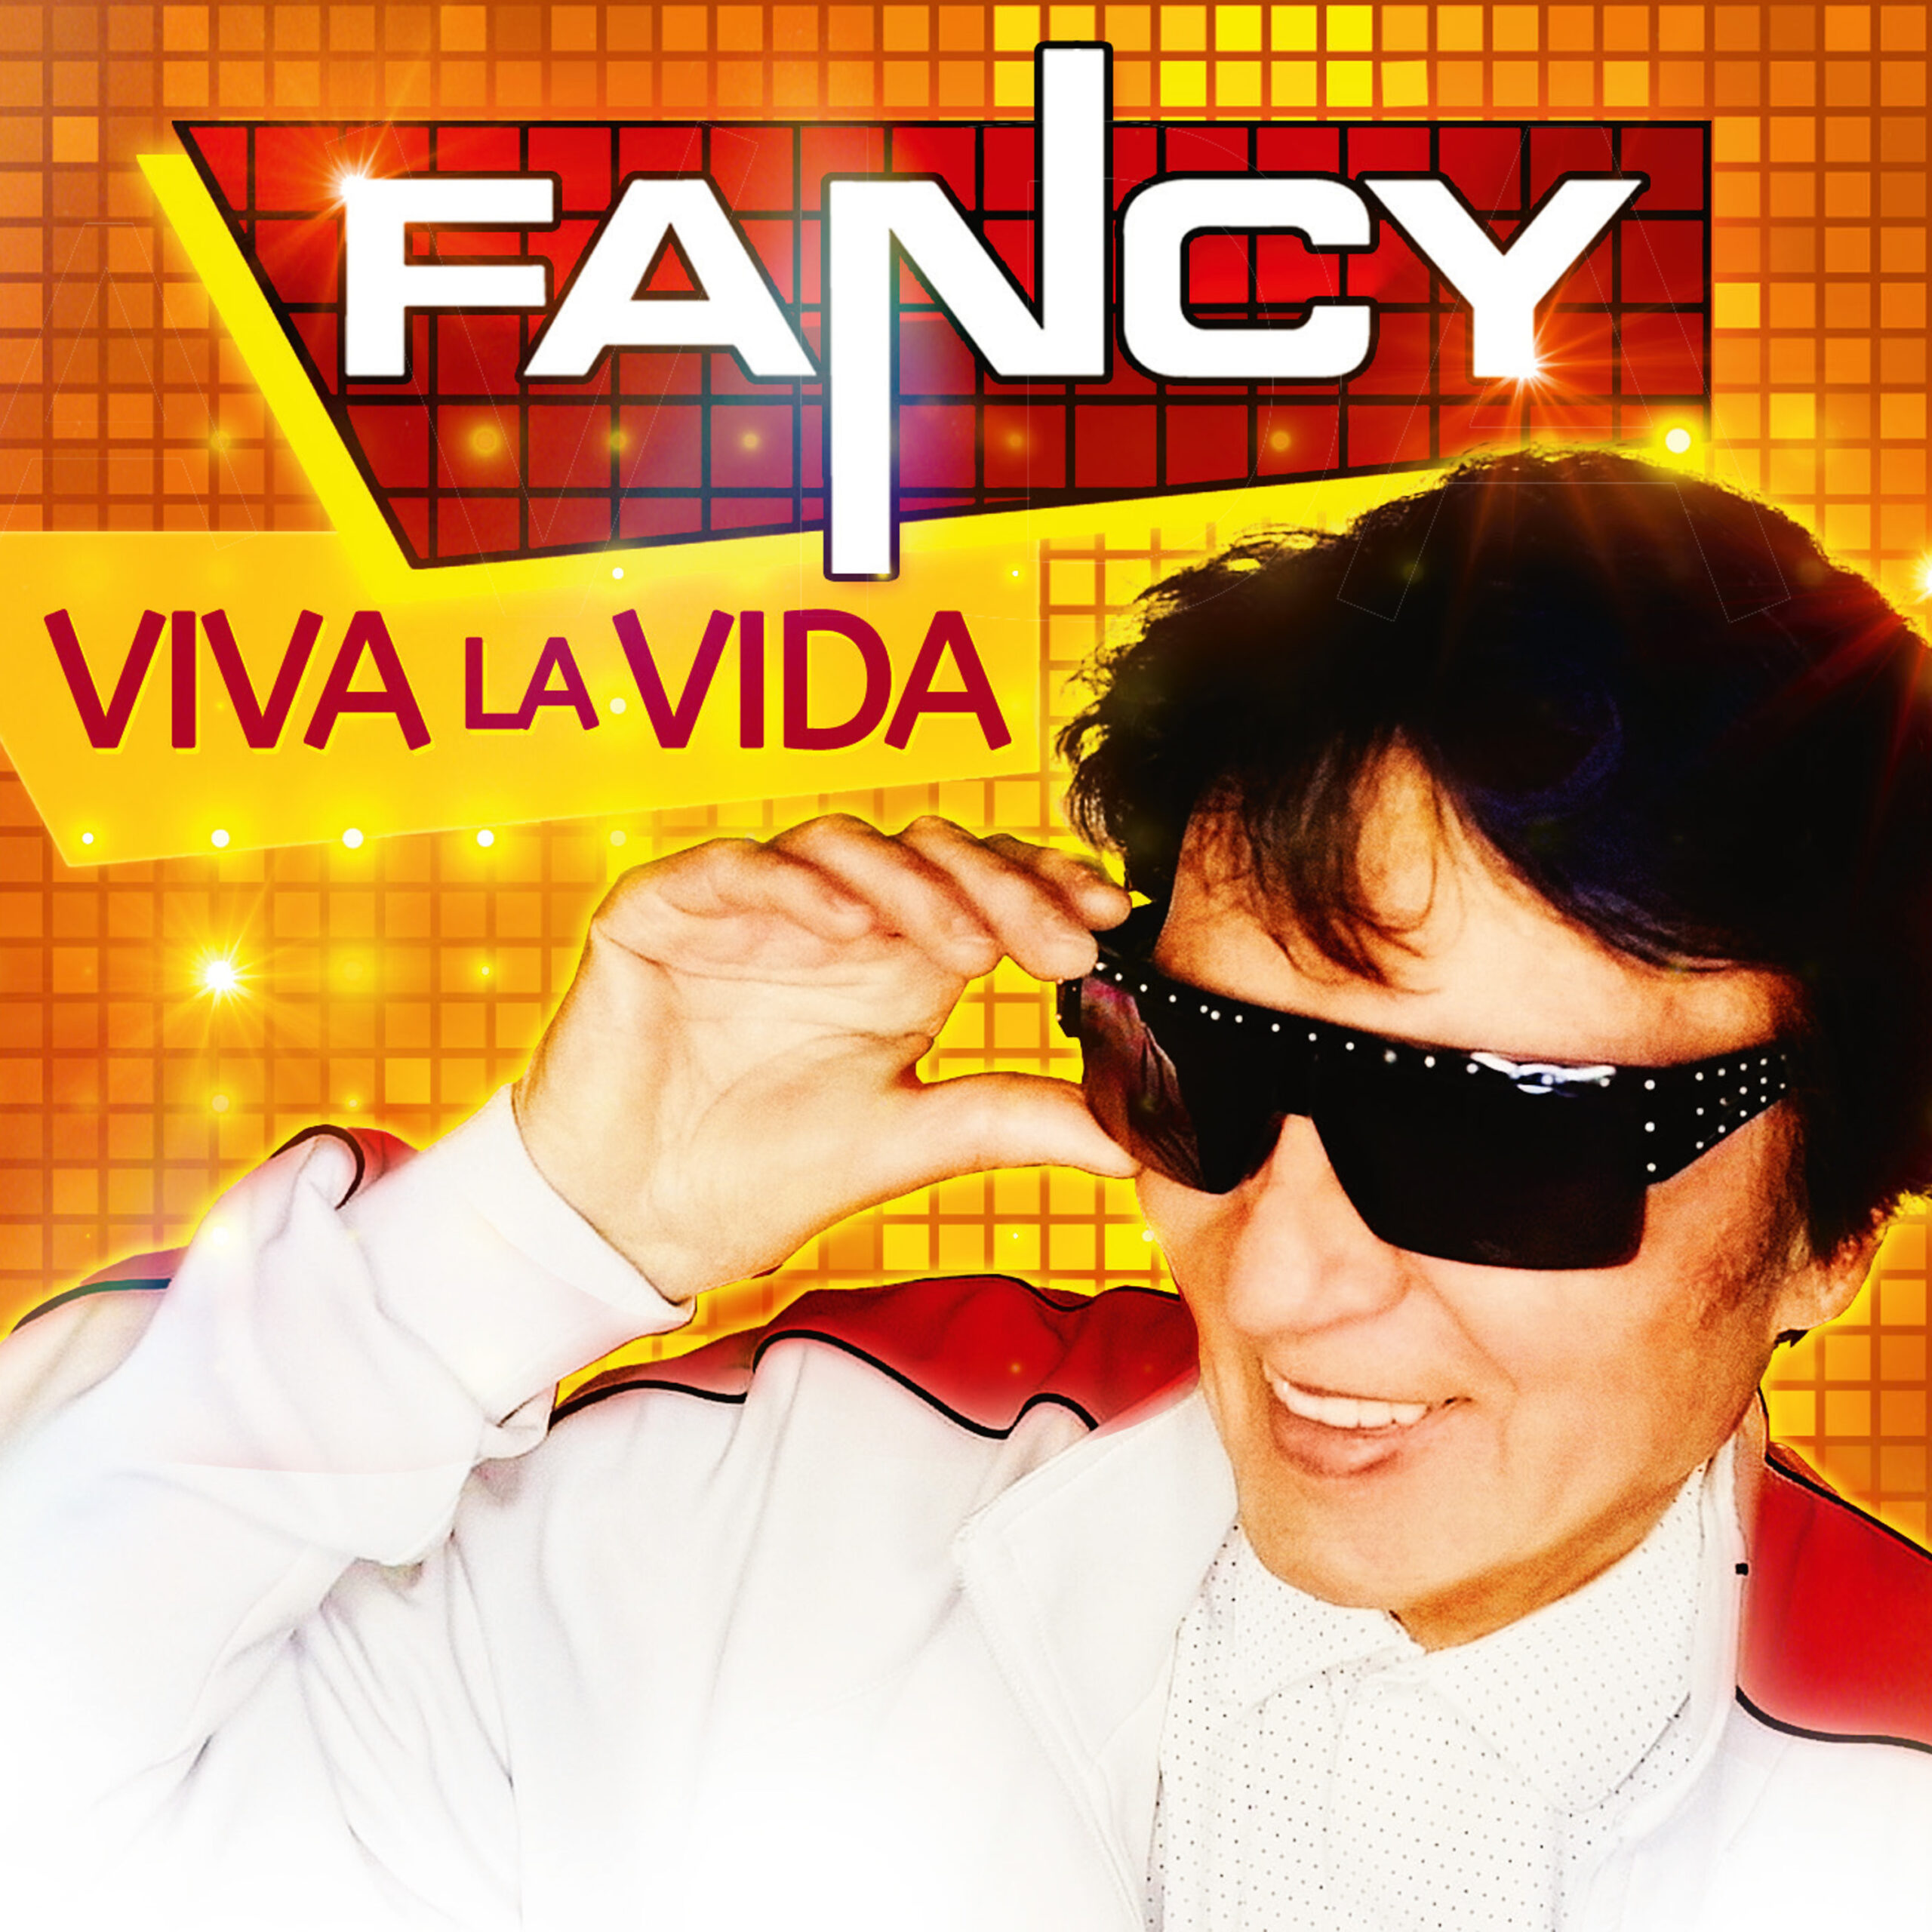 El artista «Fancy» lanza su nuevo disco «Viva la vida» para los fans de la música de los 80′